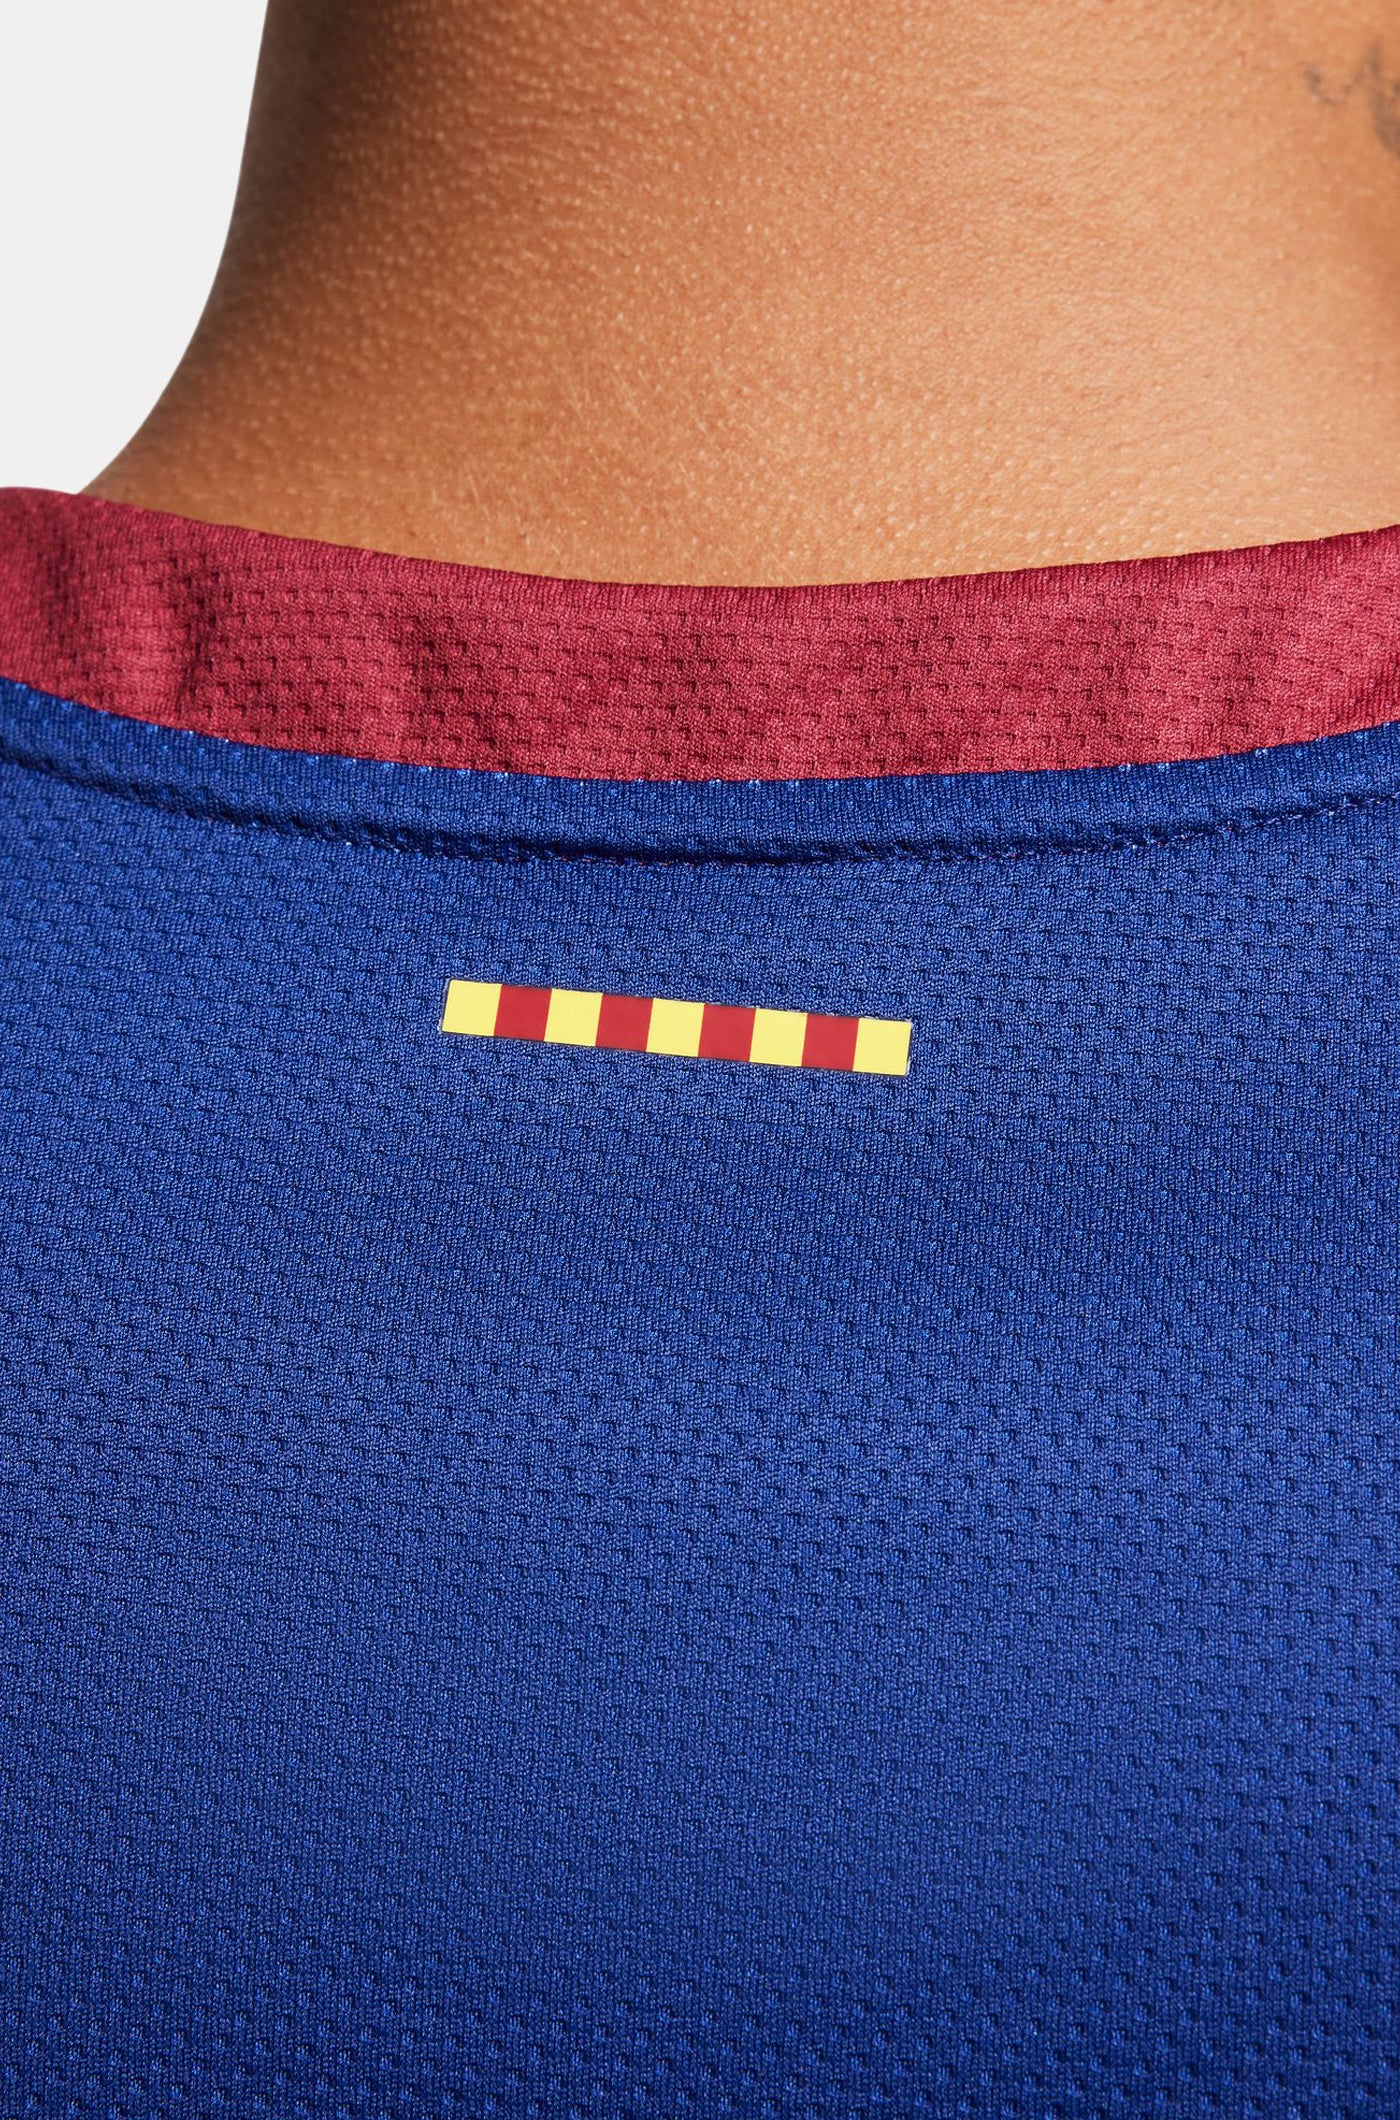 FC Barcelona home basketball shirt 23/24